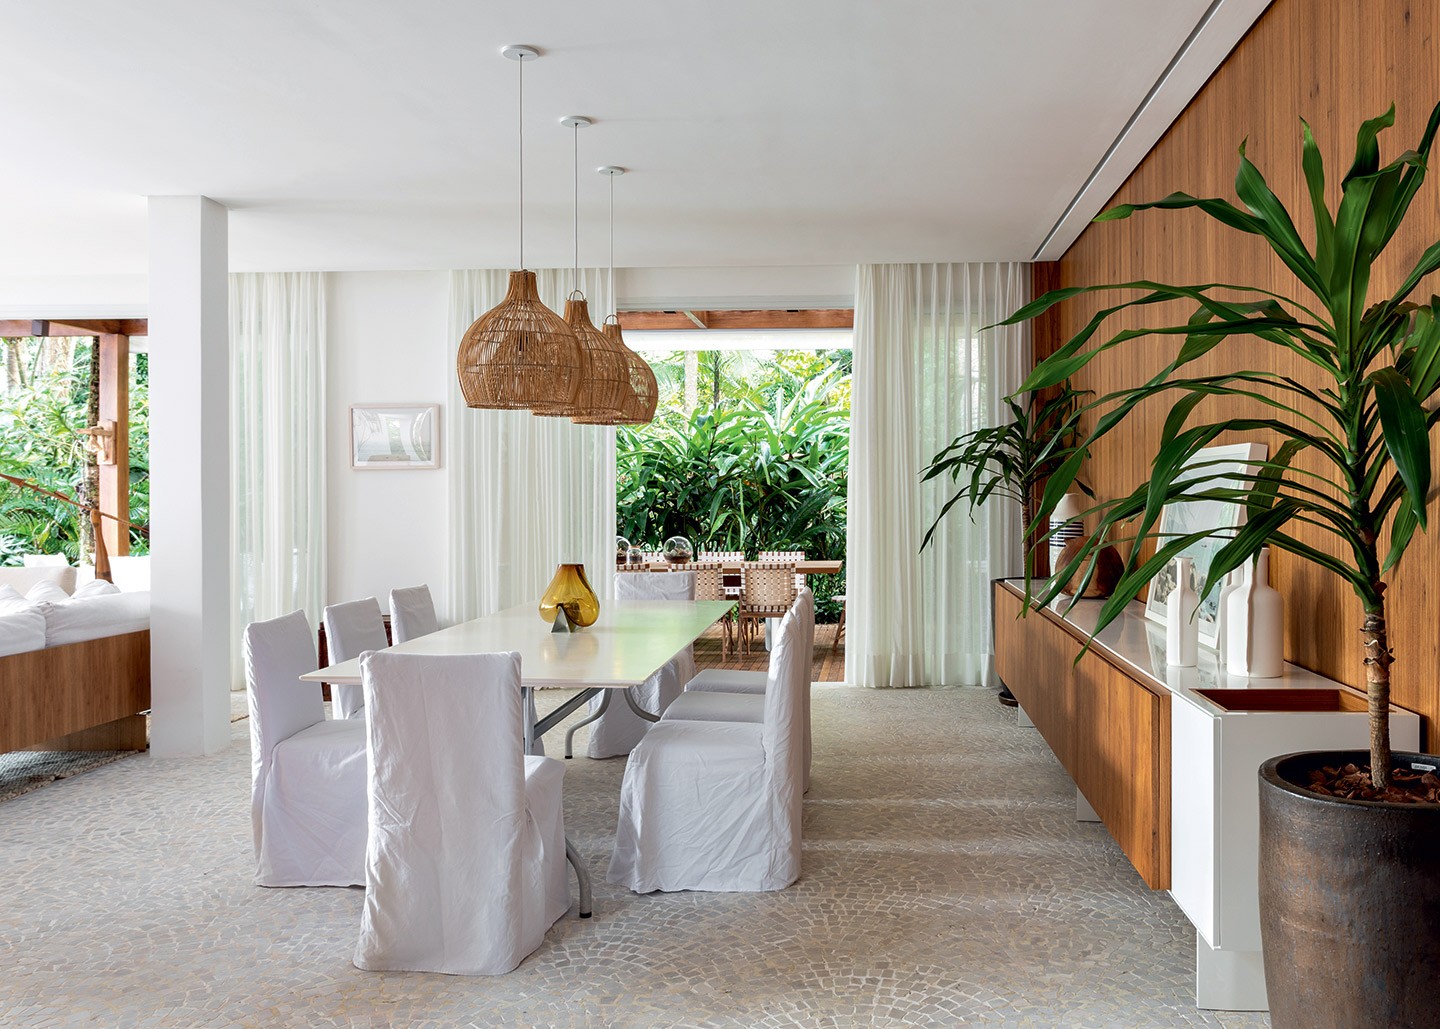 Casa de praia de 700 m² tem decoração neutra e clima de oásis (Foto: Fran Parente/divulgação)